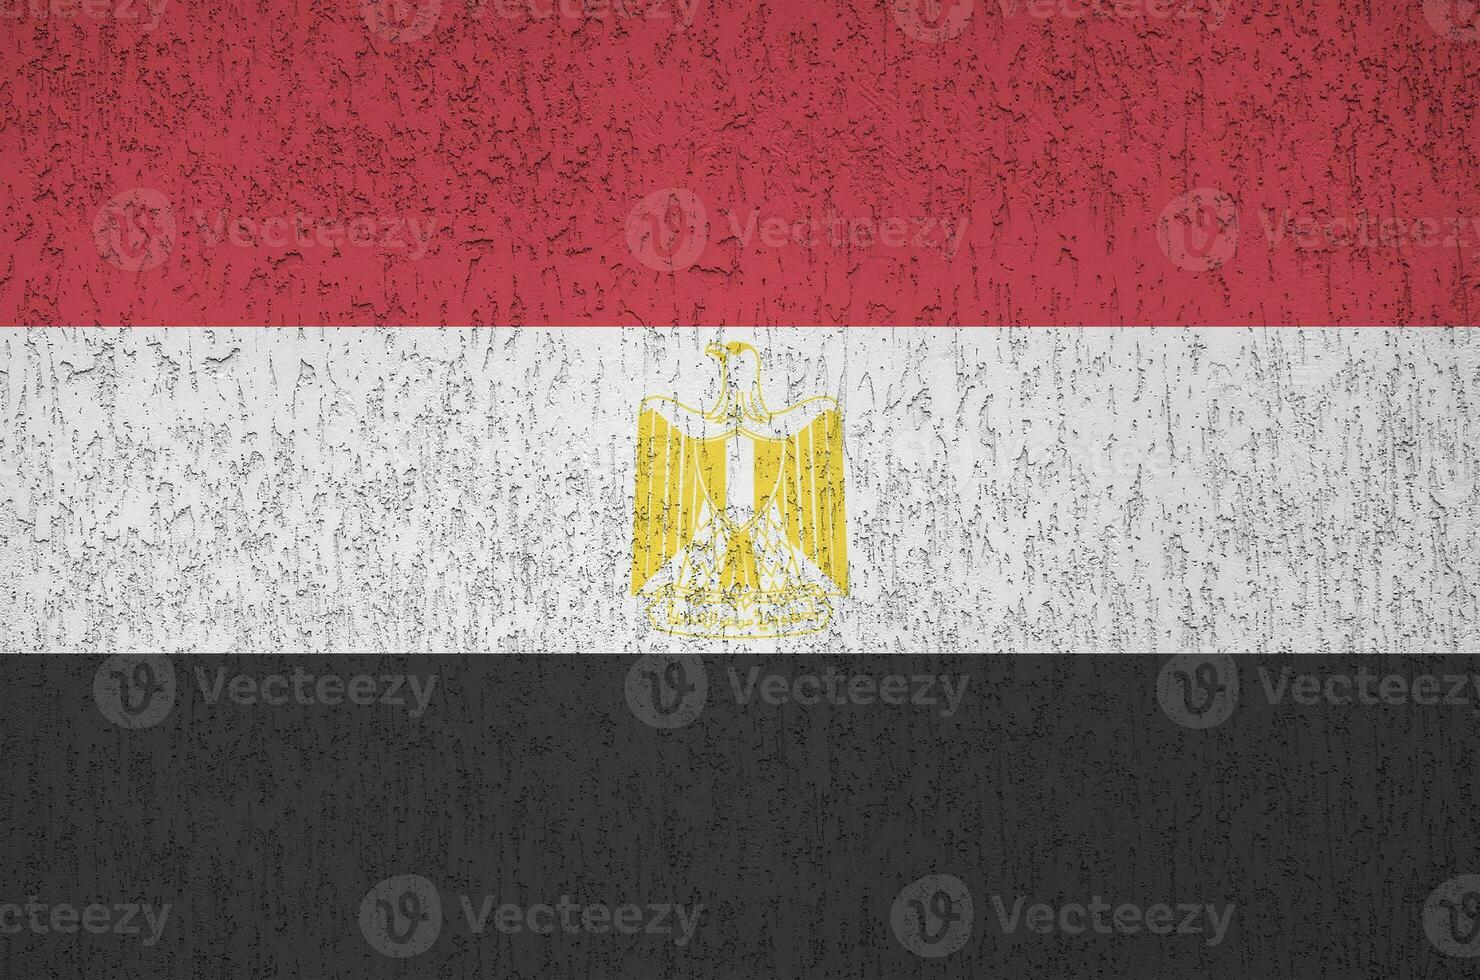 ägypten-flagge in hellen farben auf alter reliefputzwand dargestellt. strukturierte Fahne auf rauem Hintergrund foto